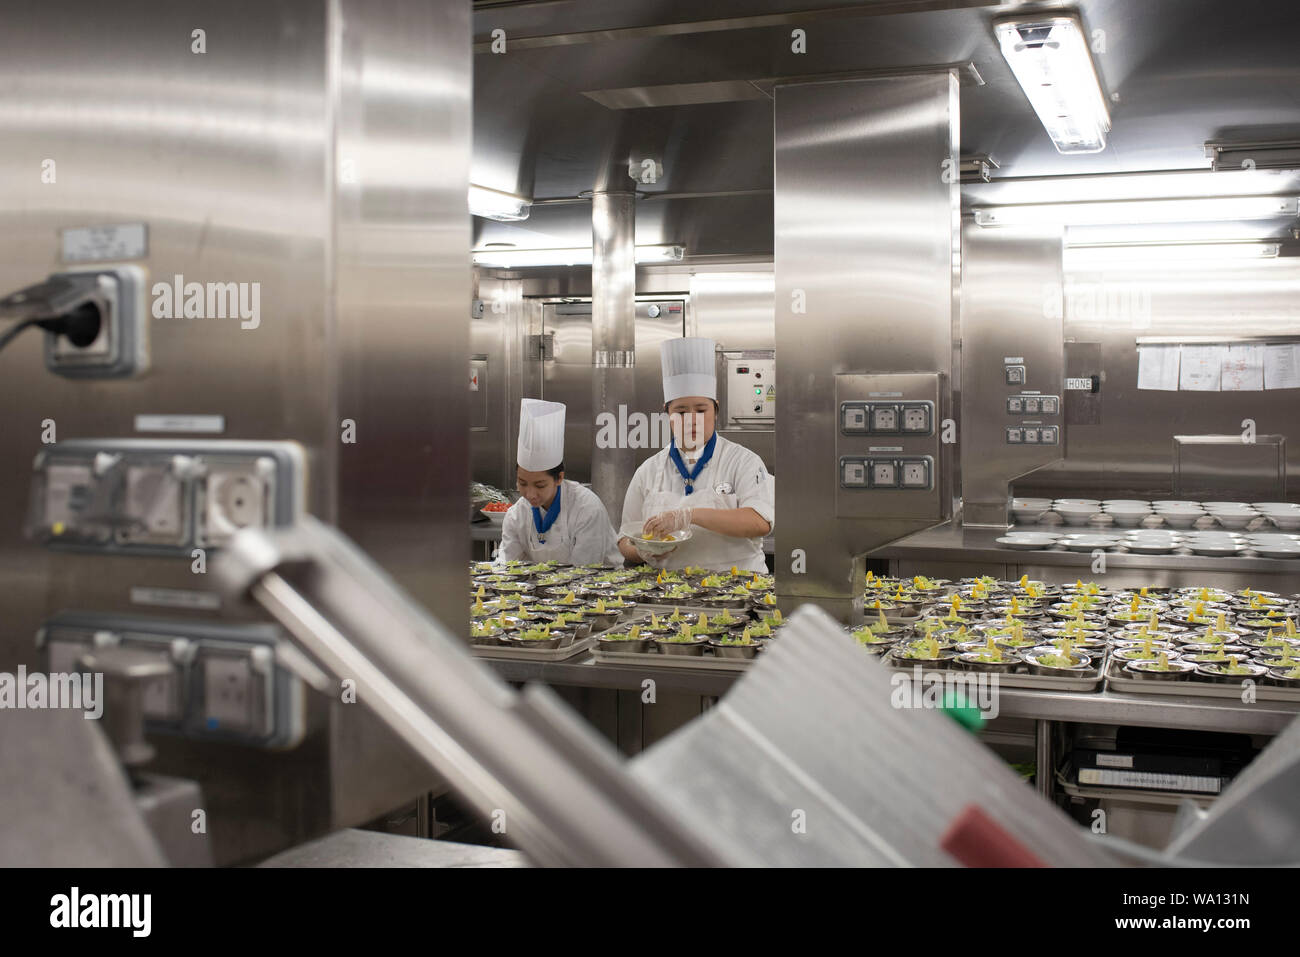 Près de 1000 personnes en cuisine travaillent à un rythme effréné. Les entrées, les plats et les desserts sont préparés dans des endroits différents. Stock Photo